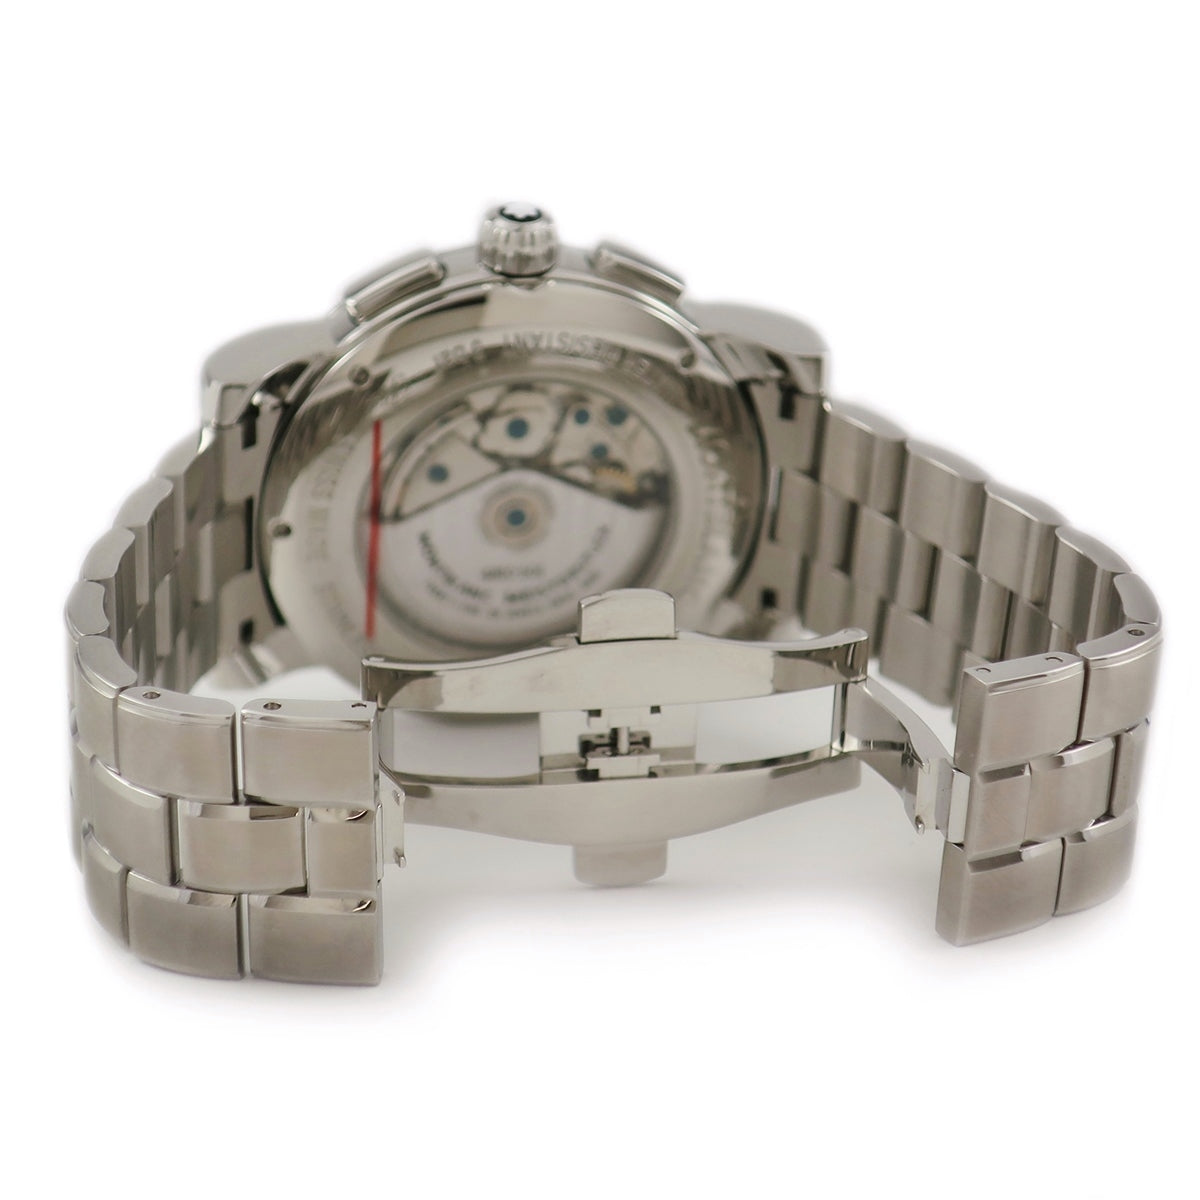 【MONTBLANC】モンブラン スター4810 腕時計 クロノグラフ 自動巻き SS 黒文字盤 U0102376/md15436kw